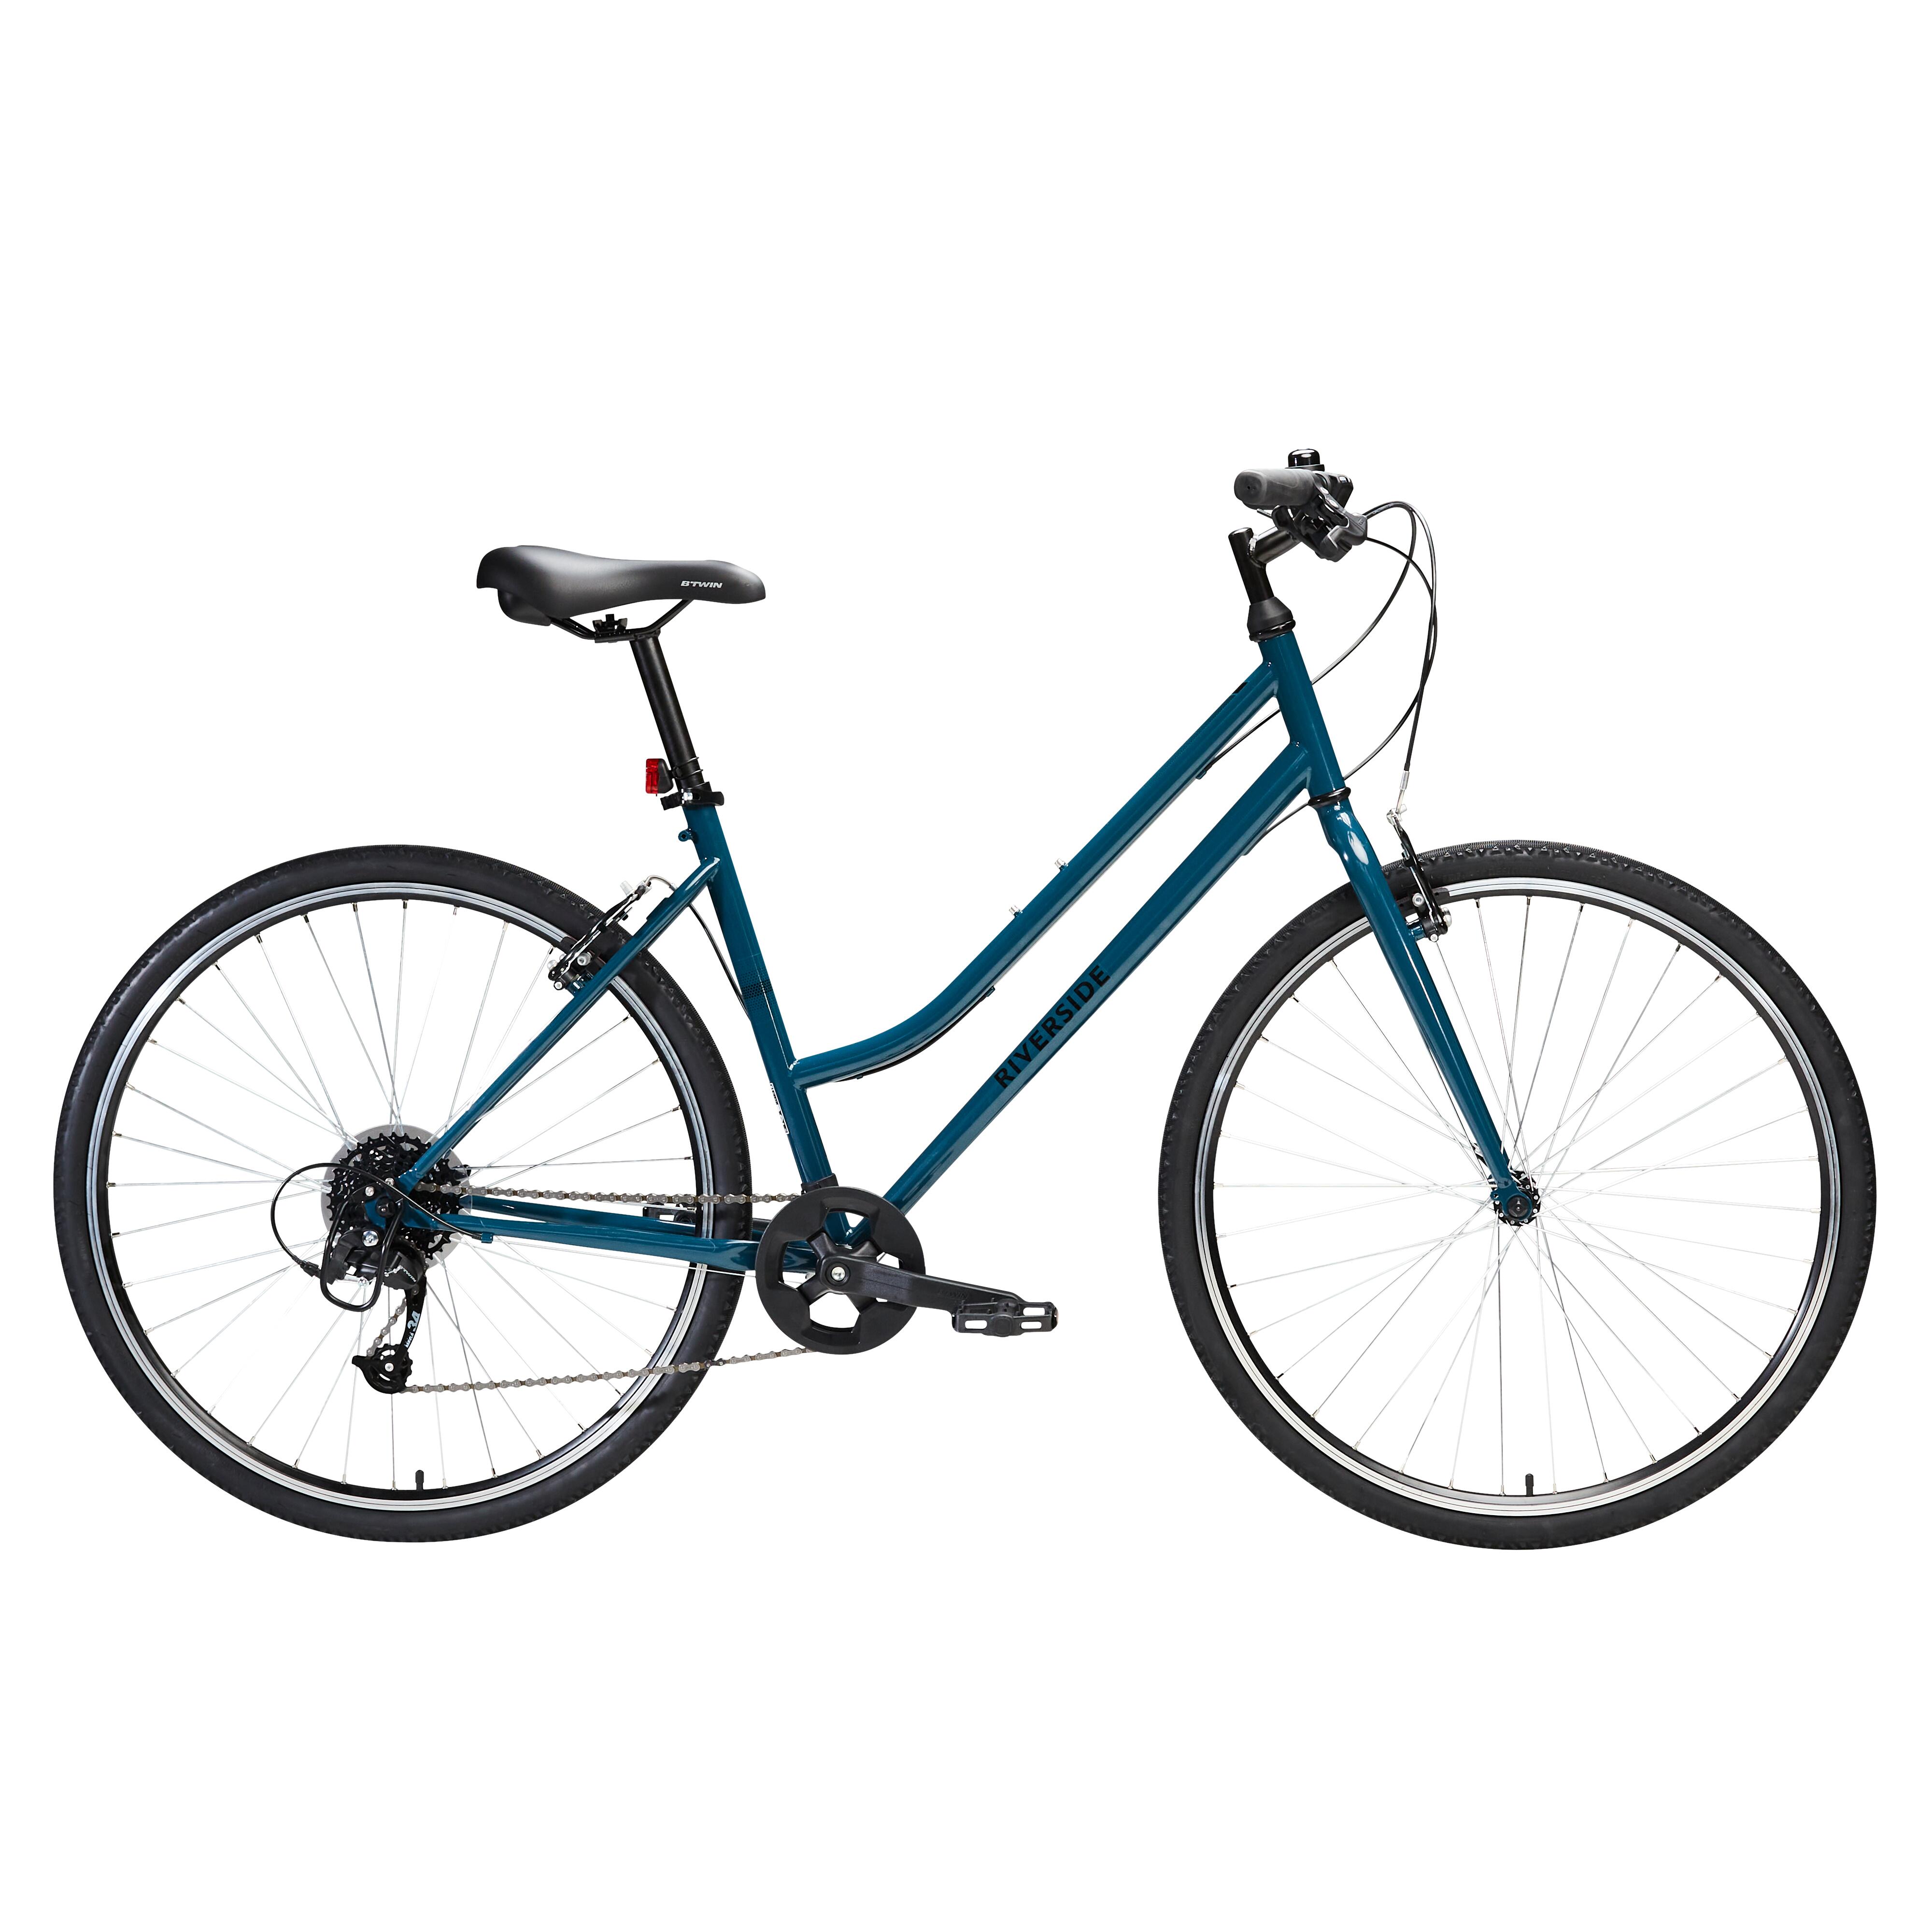 Bicicletă polivalentă Riverside 120 Albastru decathlon.ro